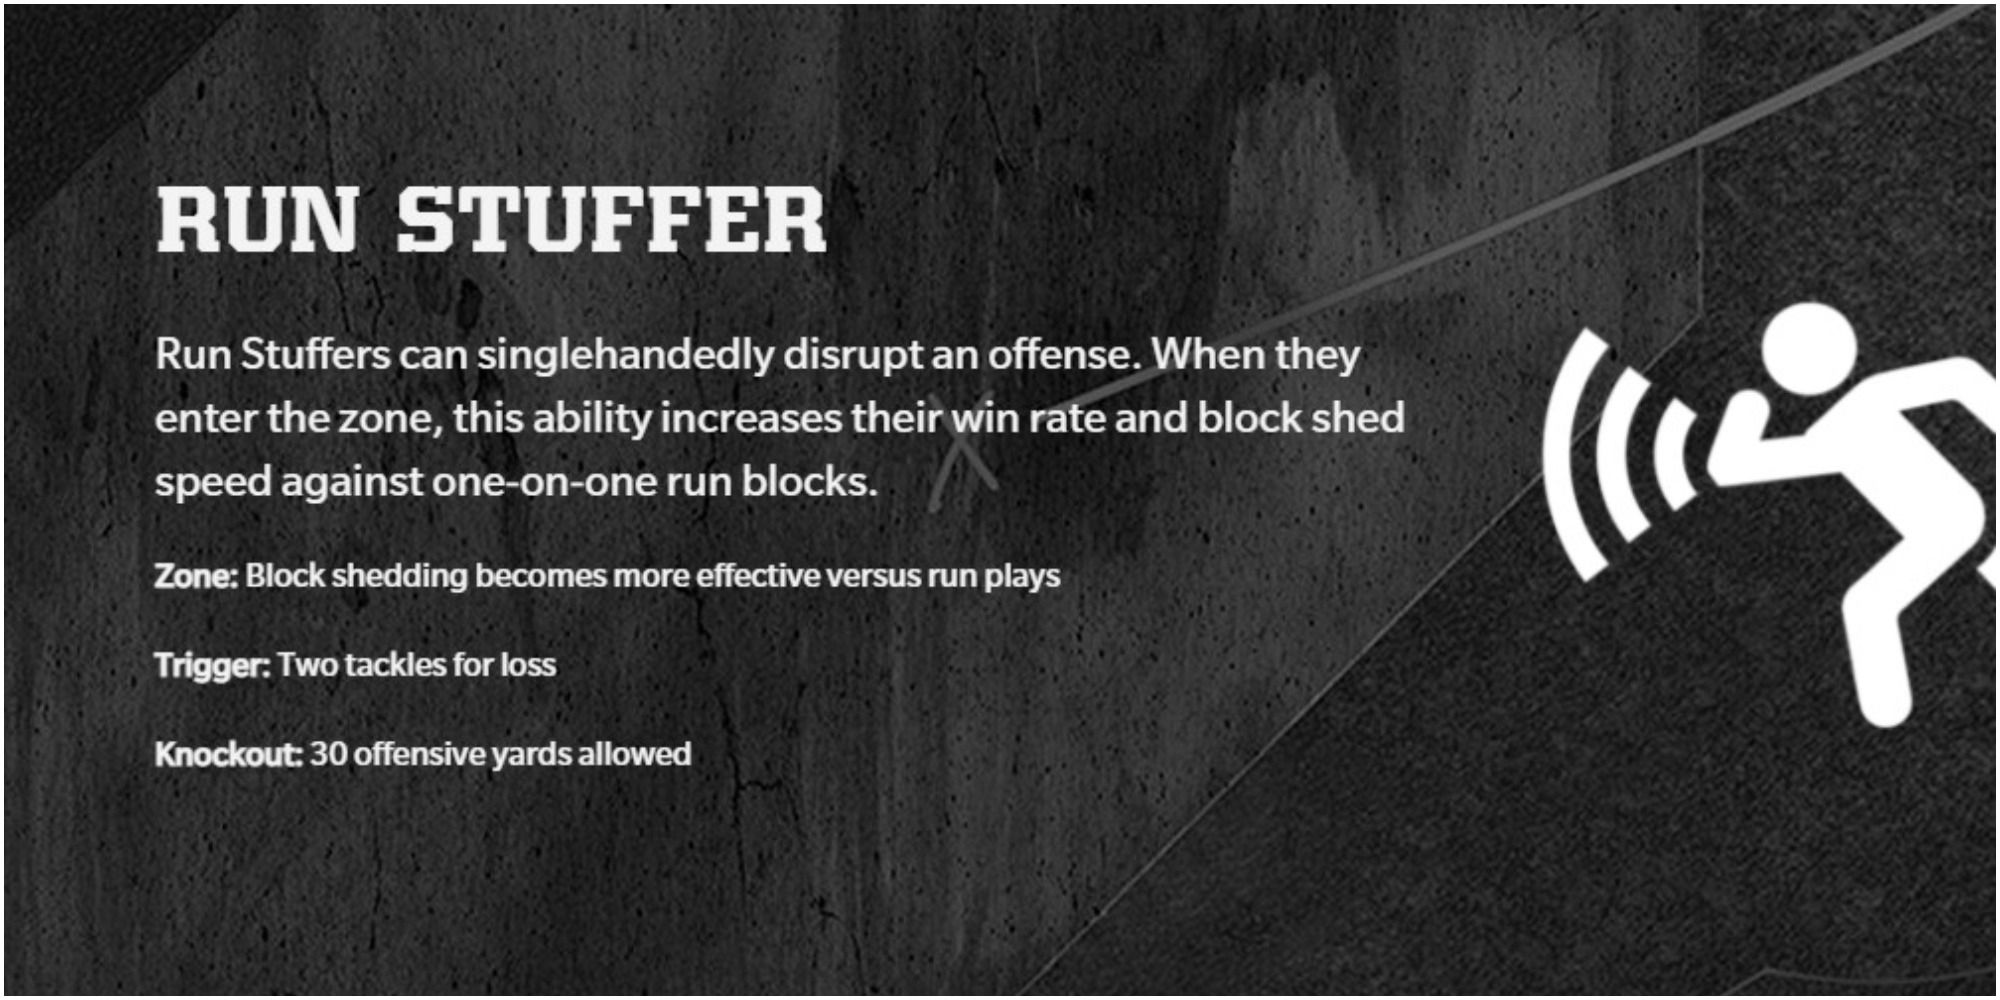 Madden NFL 22 Run Stuffer Description On The Website